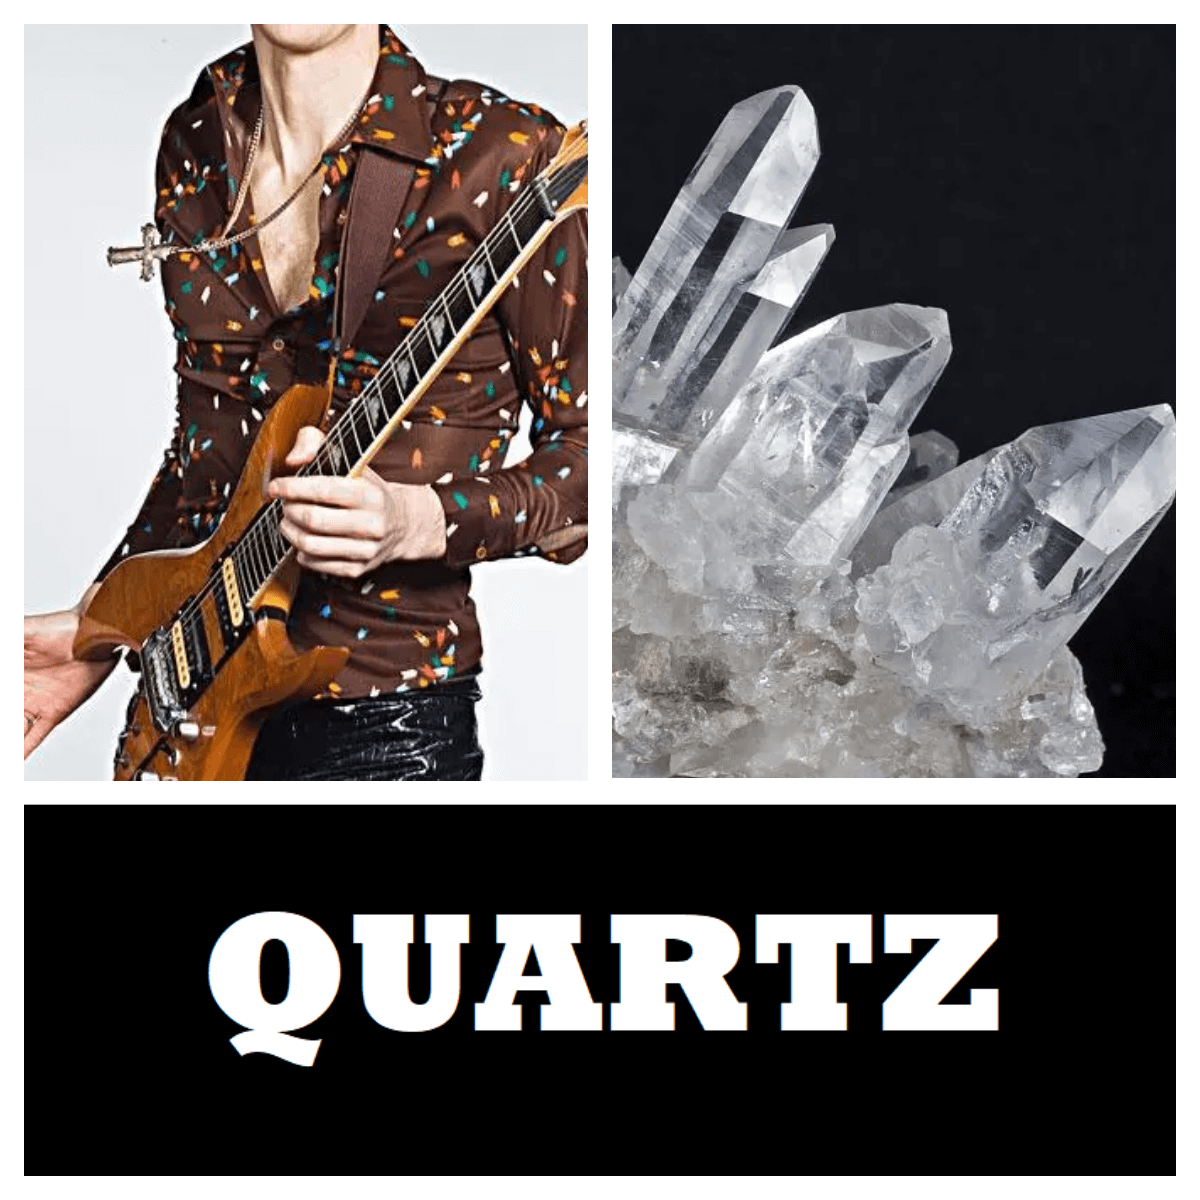 rock star quartz (1).png